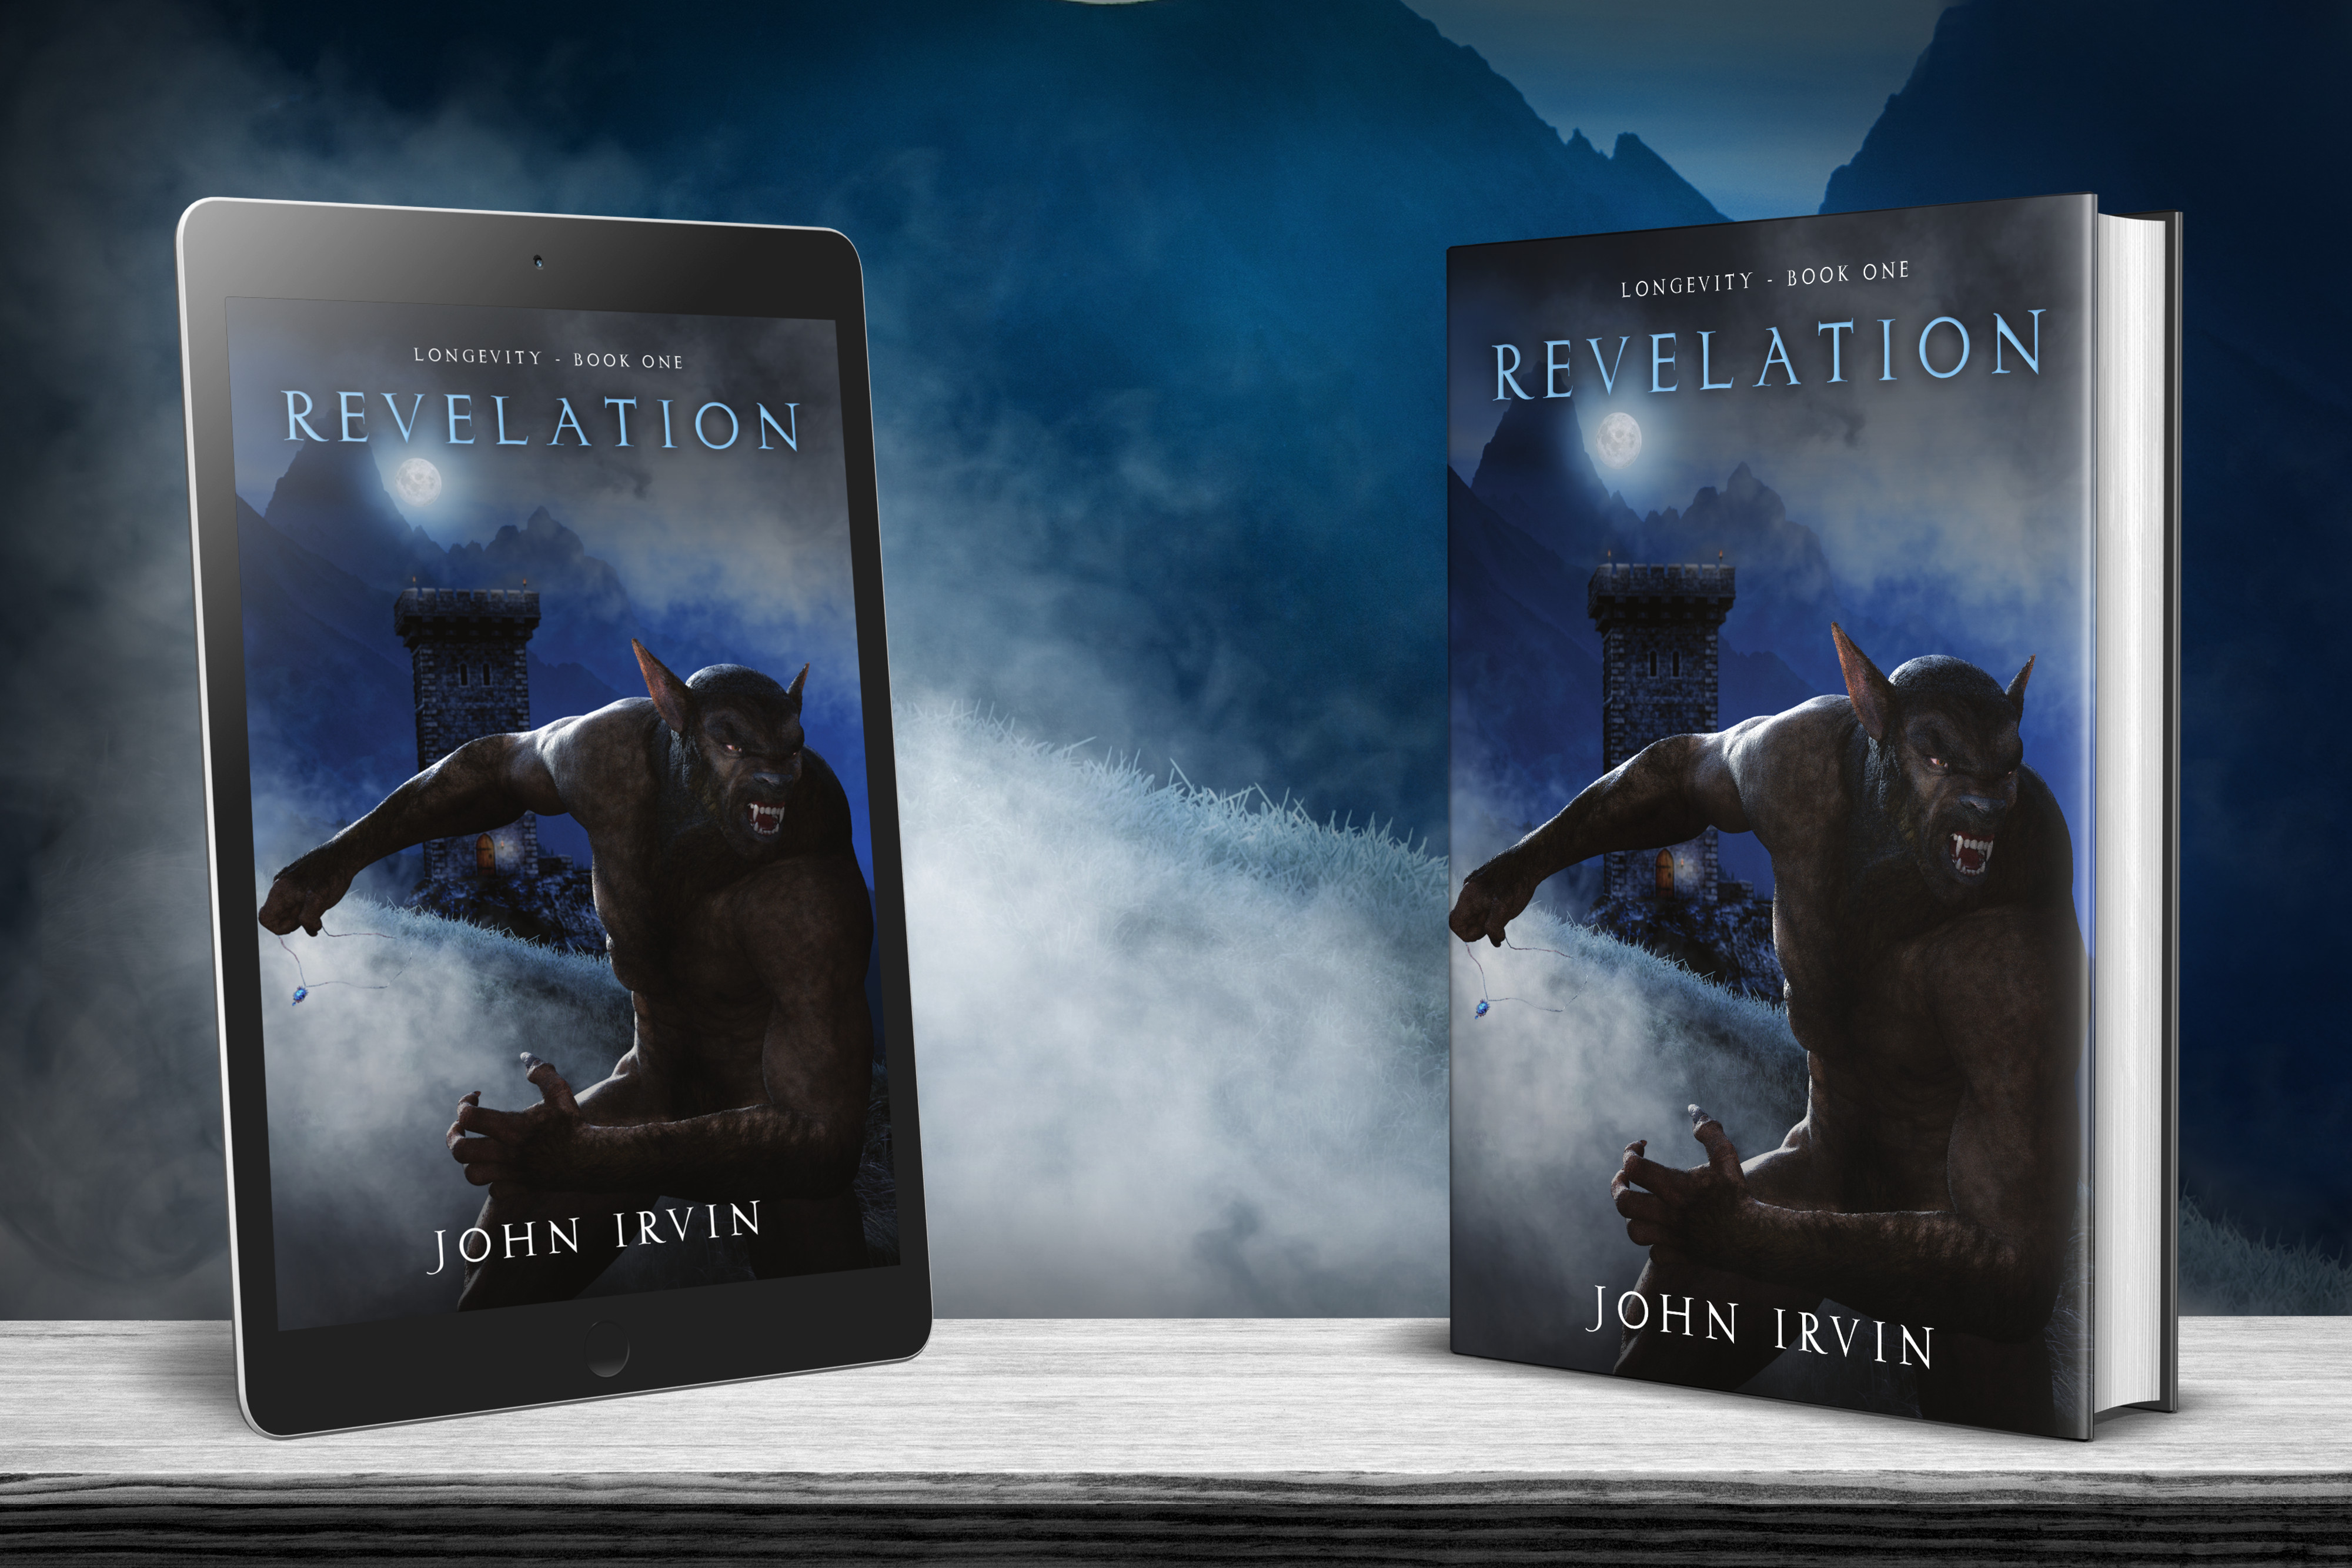 Longevity, Book 1: Revelation by John Irvin